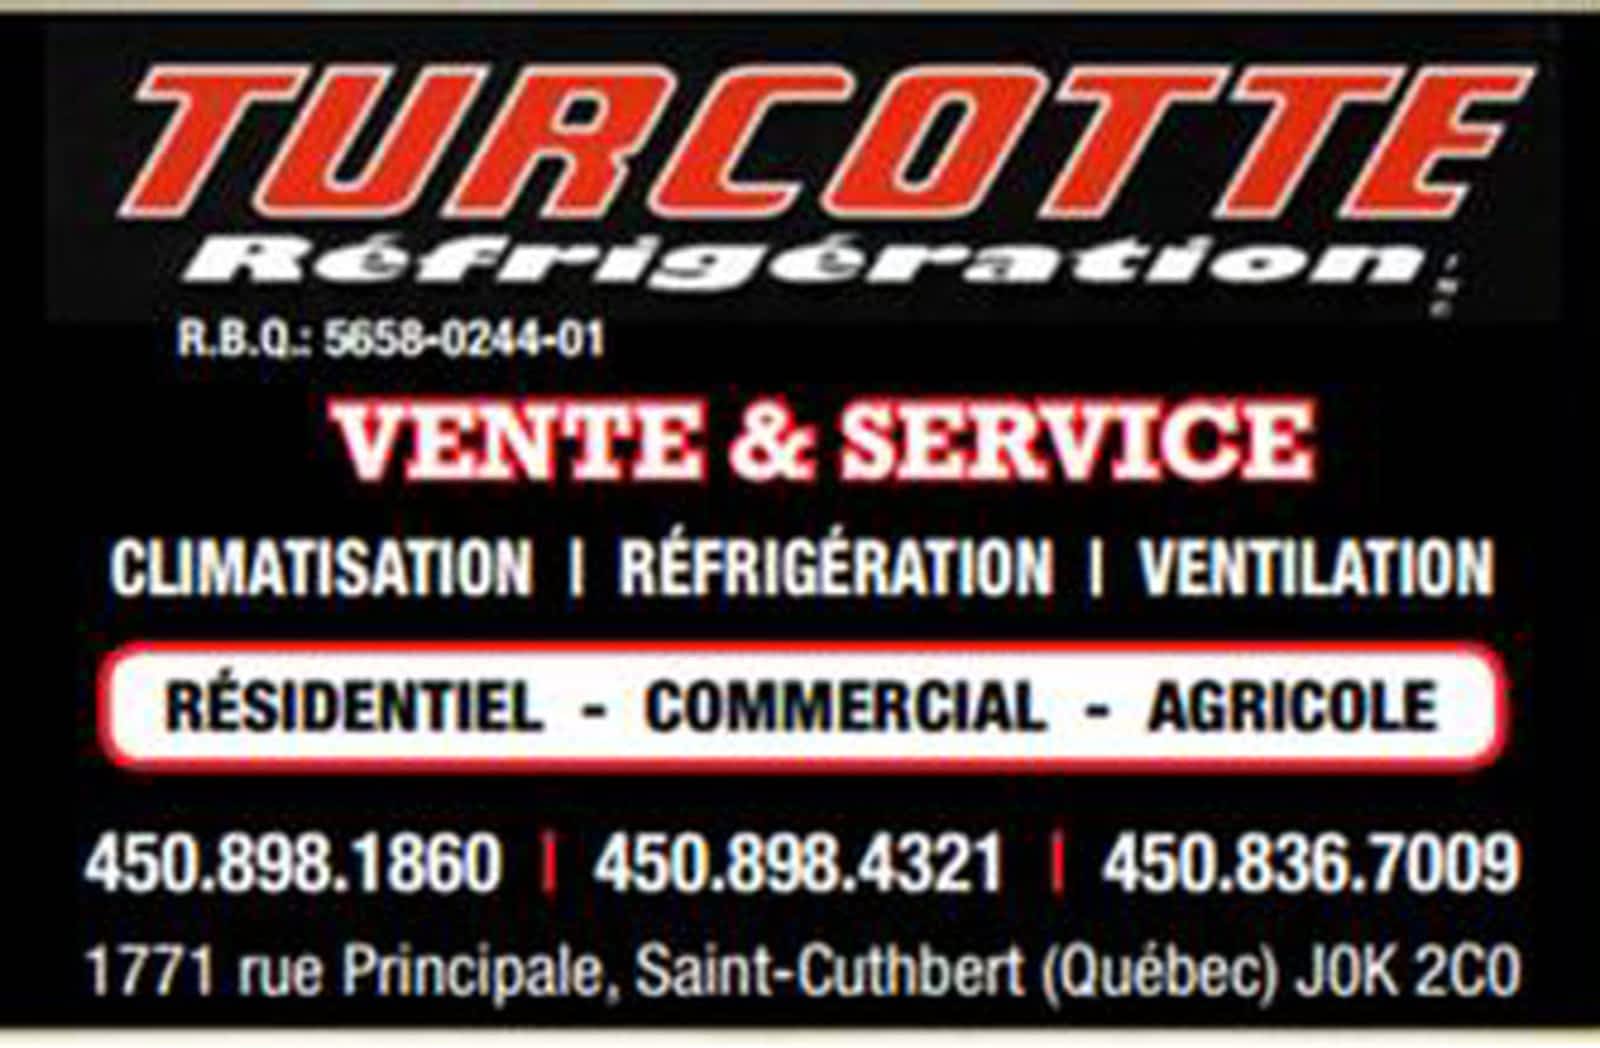 Turcotte réfrigération Inc 1771 Rue Principale, Saint-Cuthbert Quebec J0K 2C0